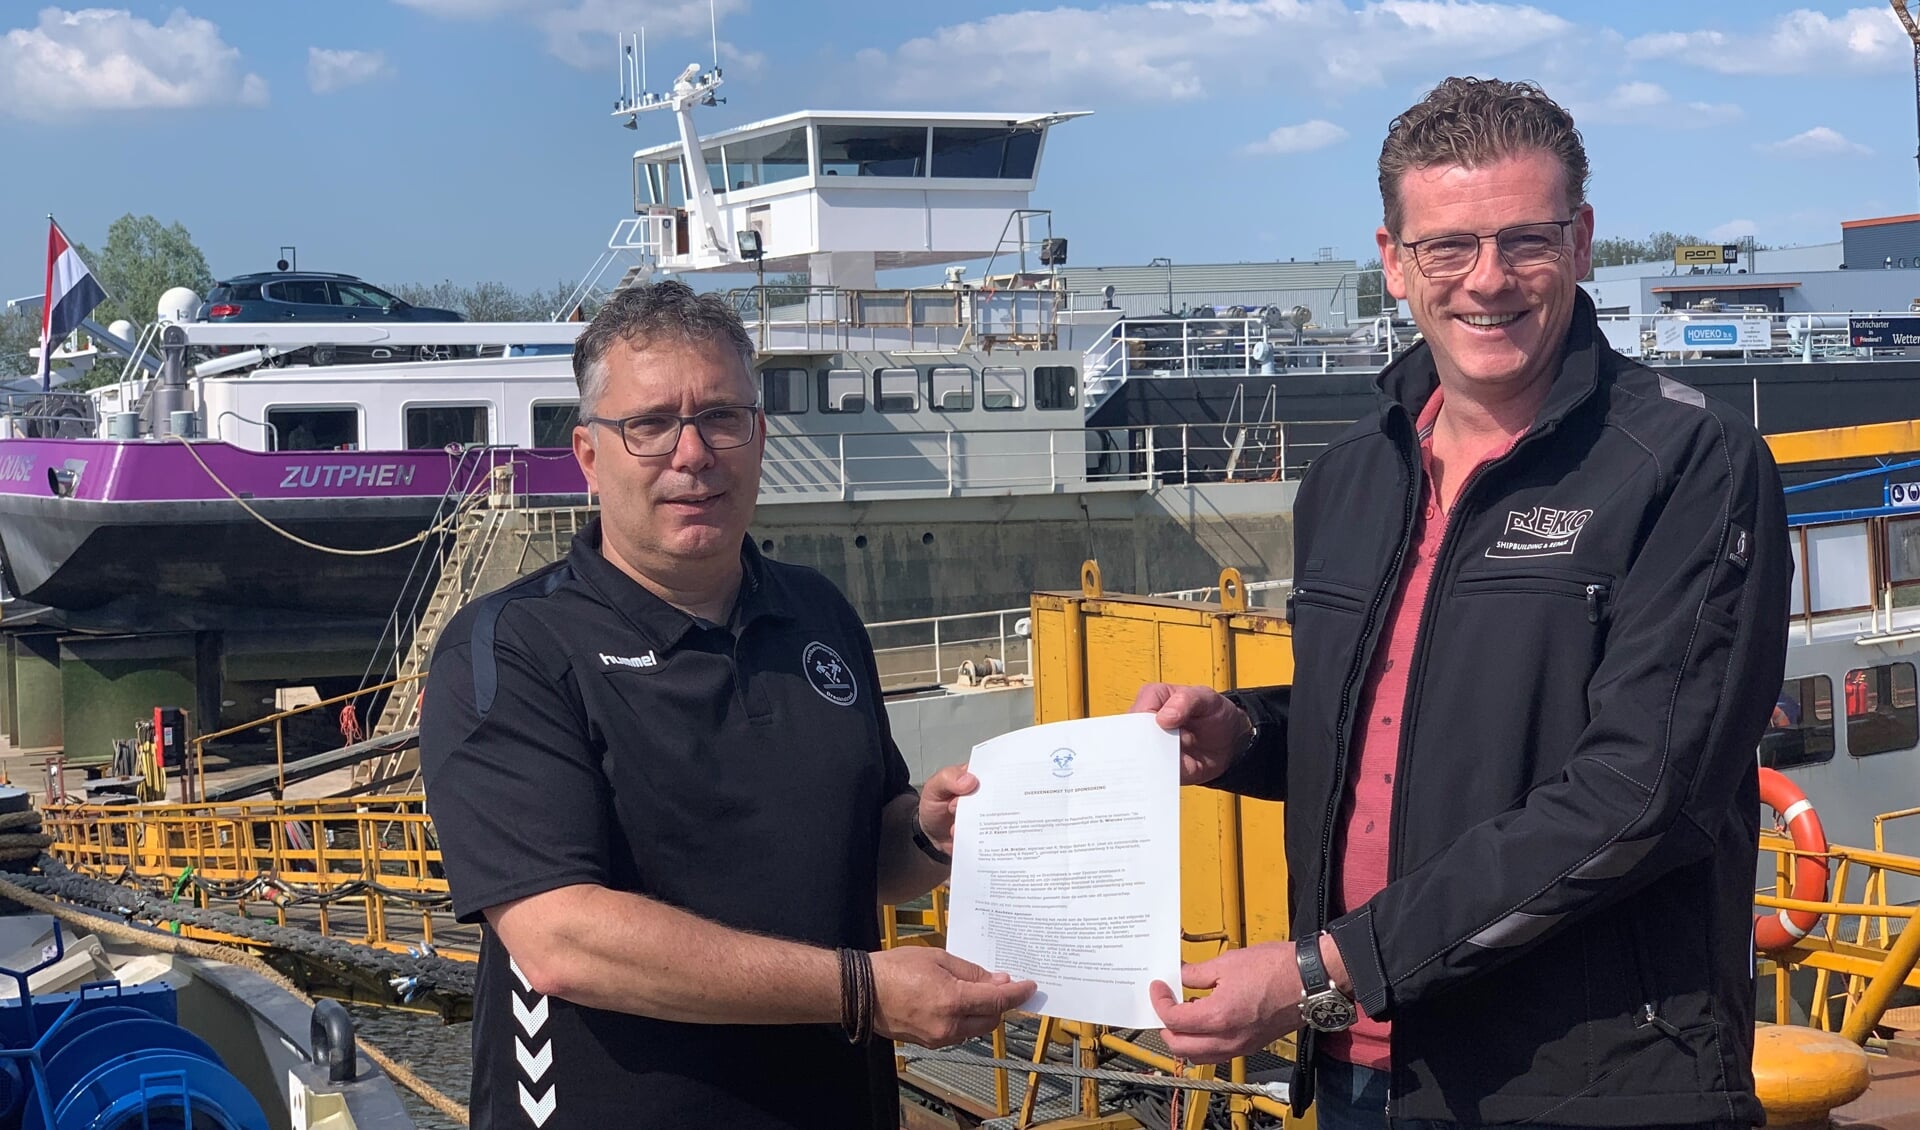 • Directeur Mark Breijer en voorzitter Steven Wierckx ondertekenden de sponsorovereenkomst vorige week bij de scheepswerf aan de oever van de Merwede.